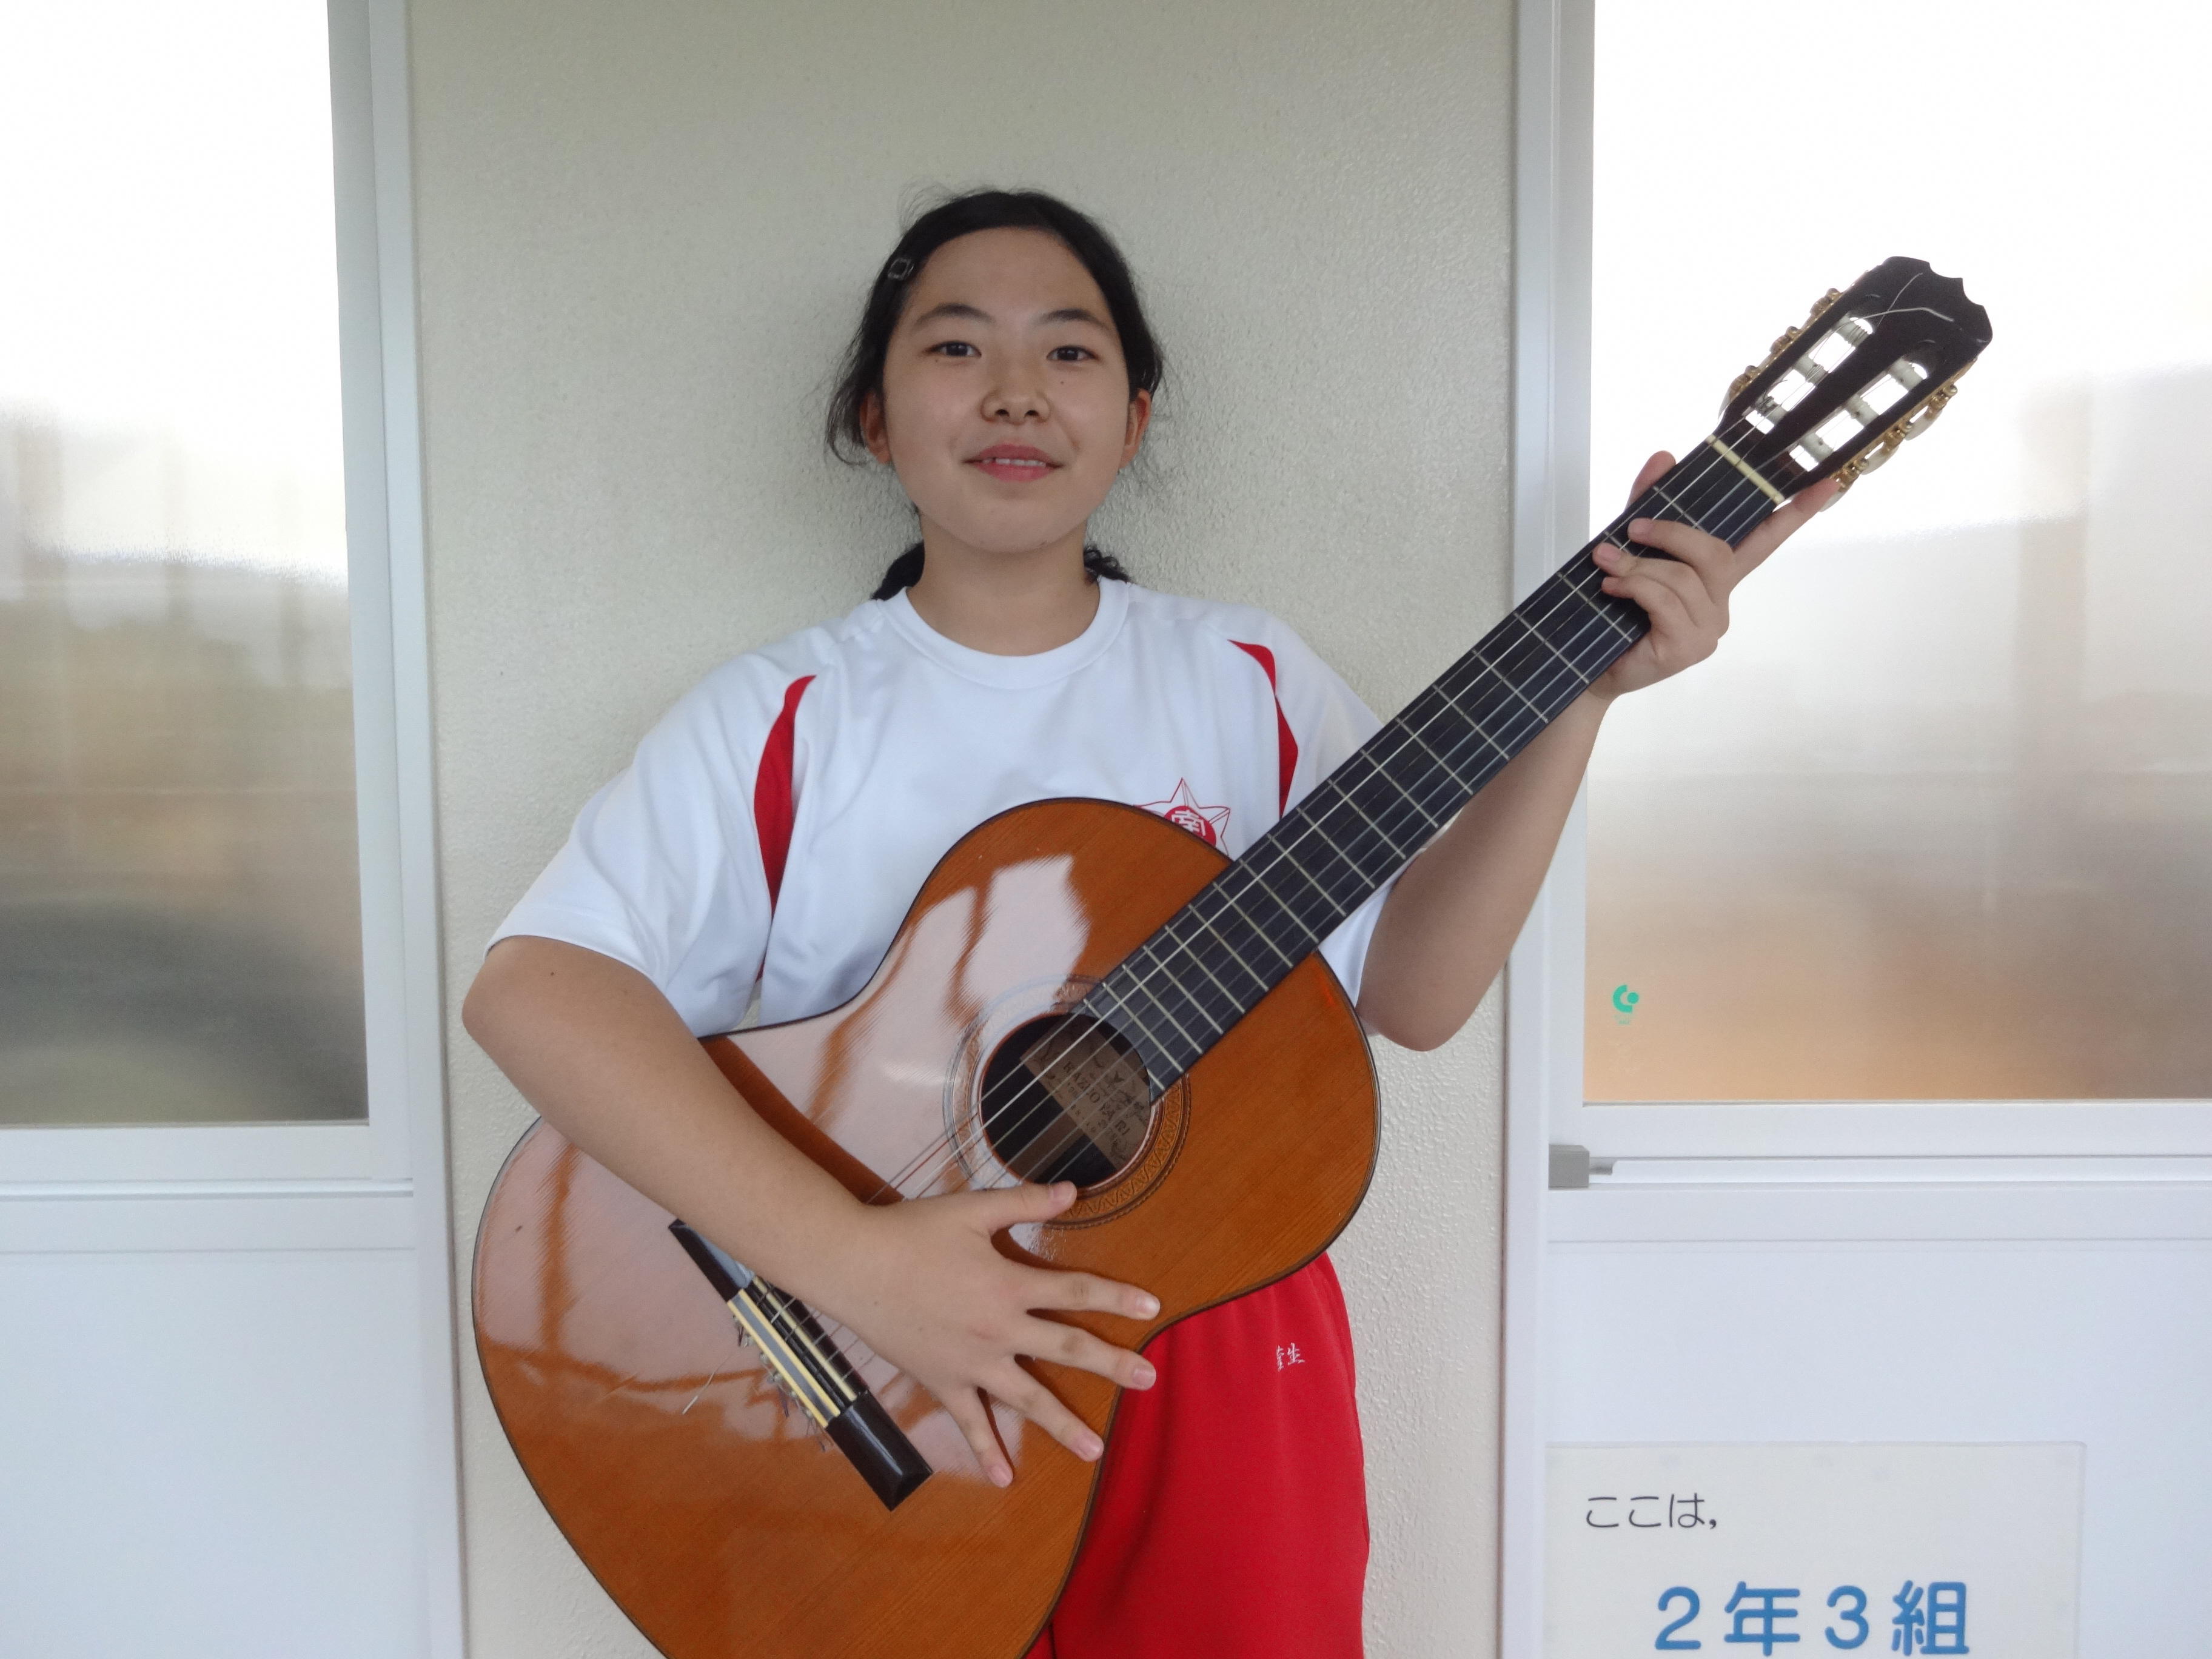 【愛知県豊橋市】ギターを寄付してくださったおかげで、クラス全員で練習できるようになりました。